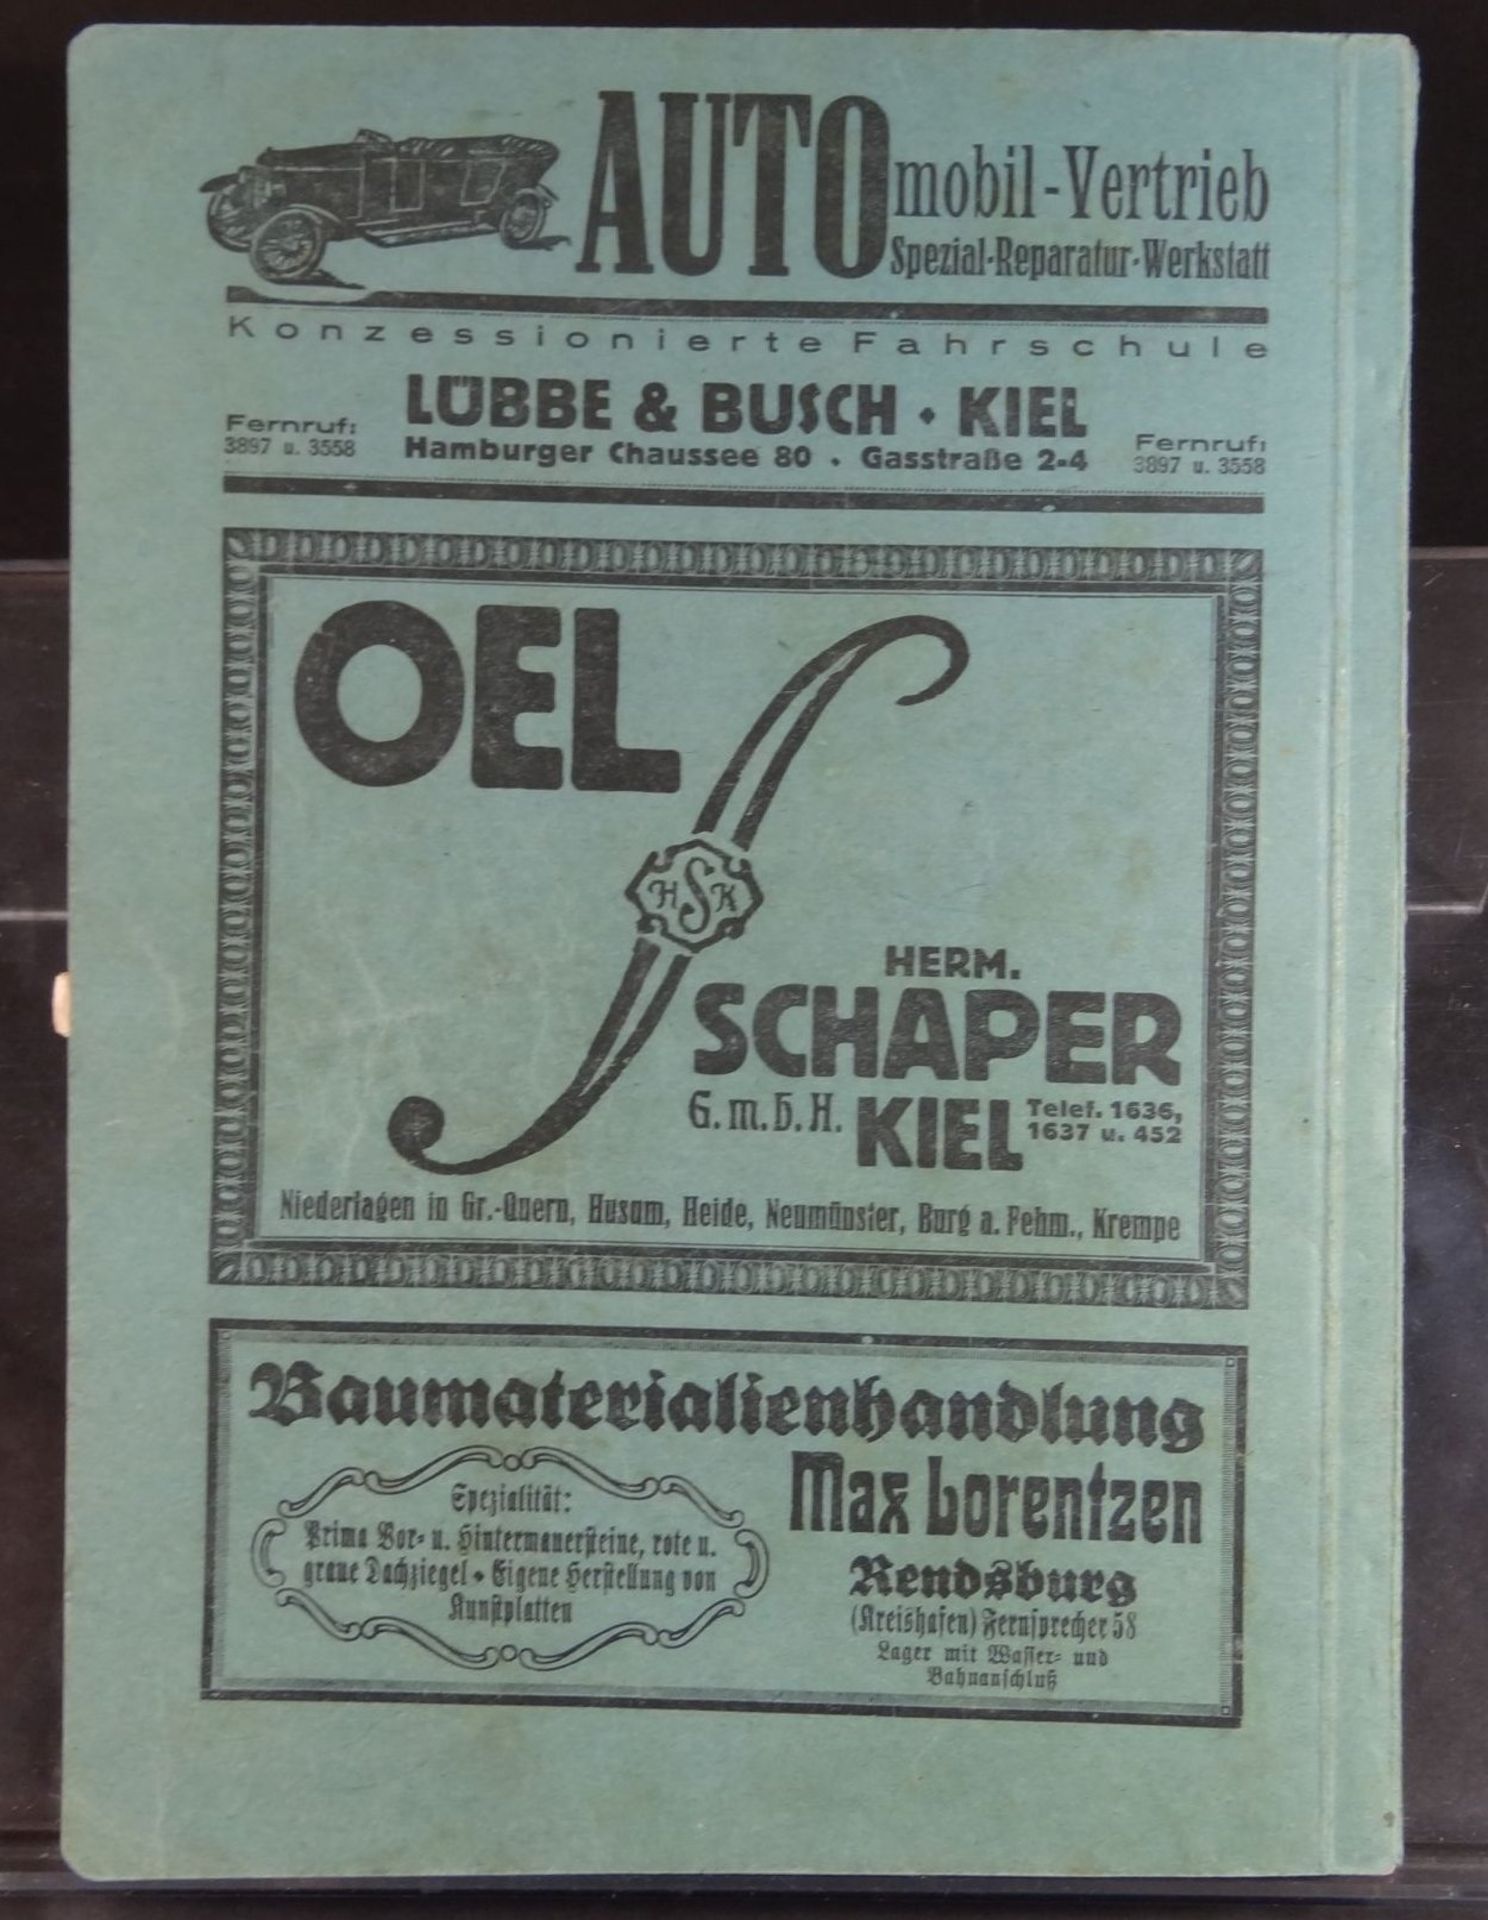 Amtliches Fernsprechbuch für den Ober-Direktions-Postbezirk Kiel, 192< - Bild 6 aus 6